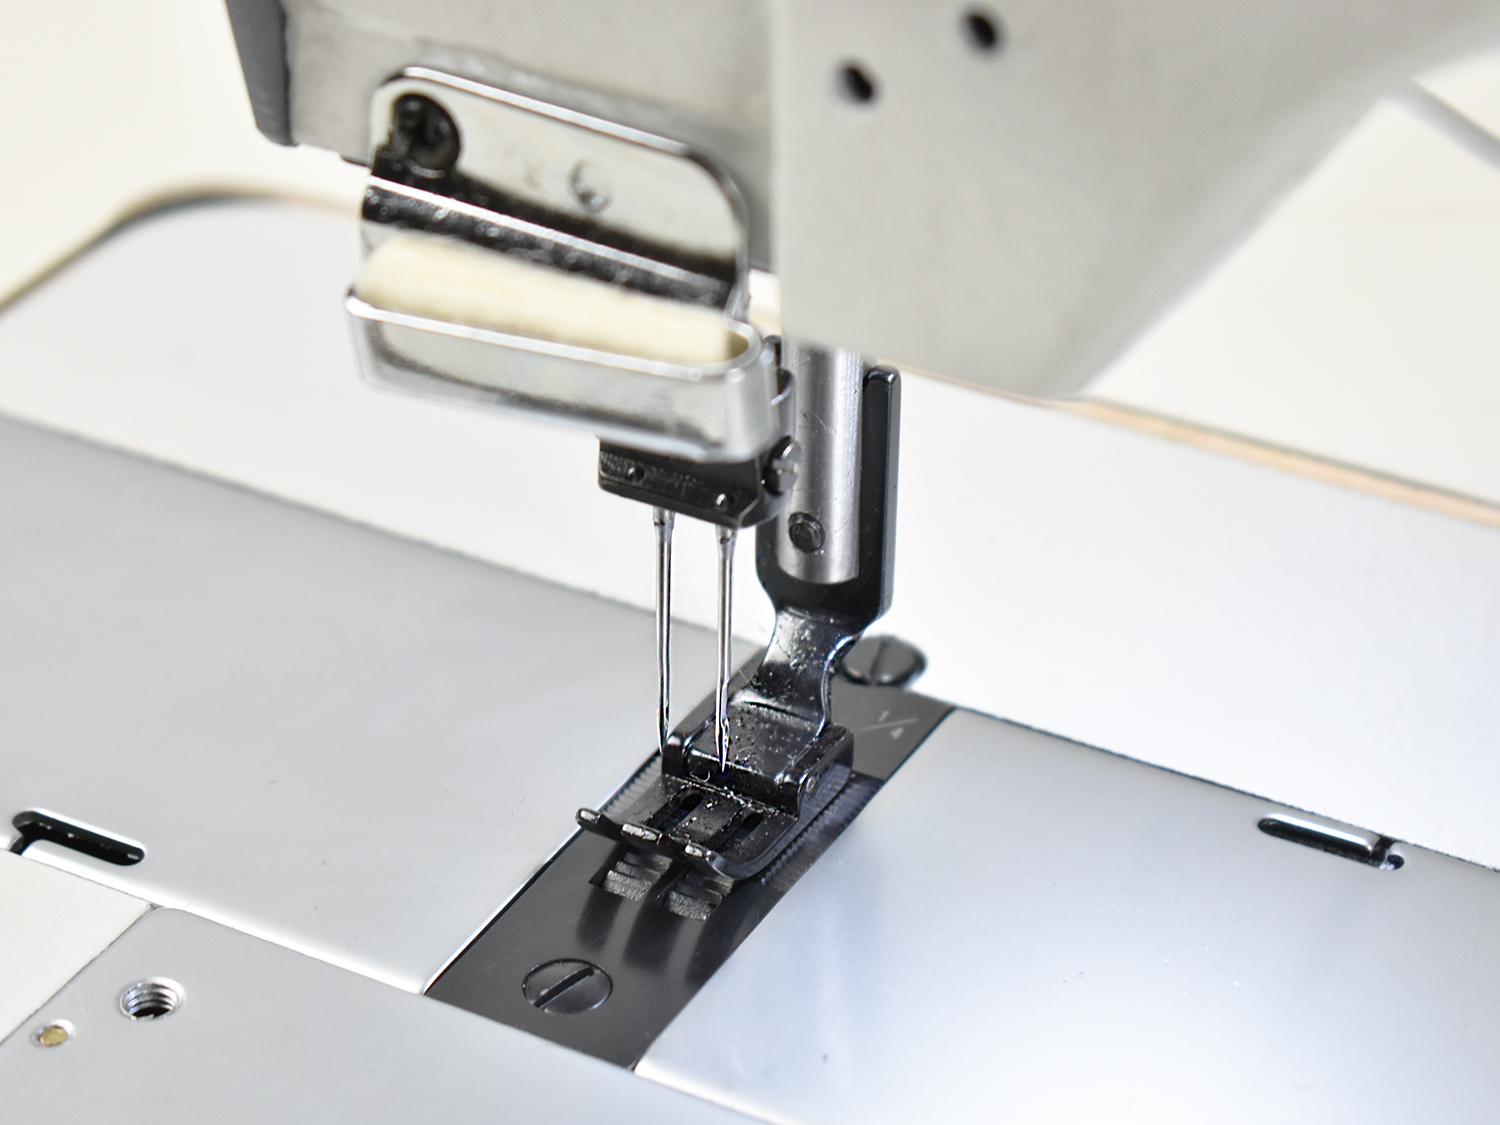 Двухигольная промышленная швейная машина AURORA A-842DN-05 с прямым приводом